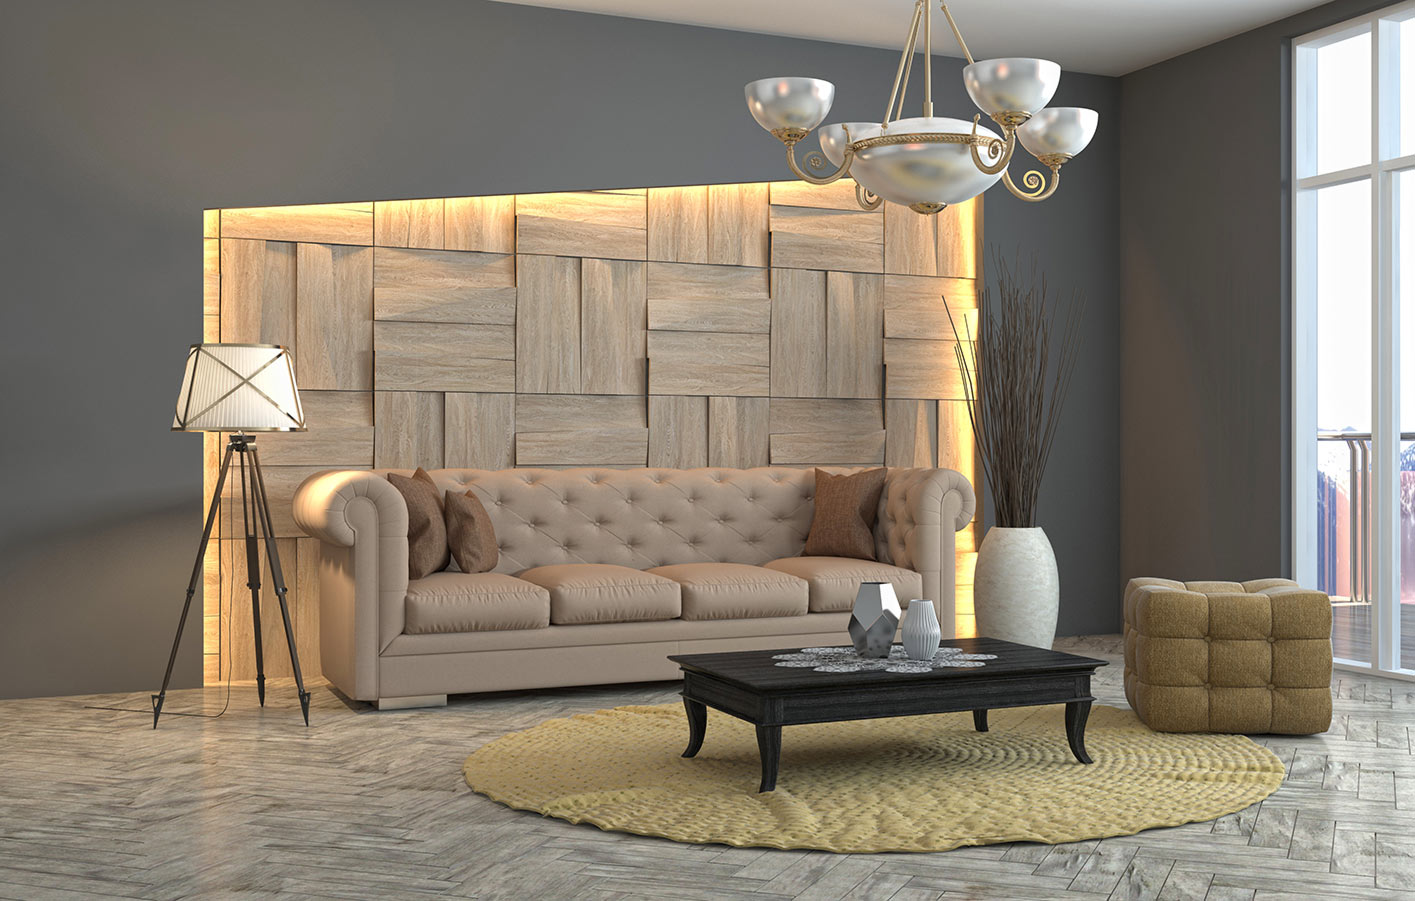 3D Wandpaneel in einem modernen Wohnzimmer in hellen Farben.